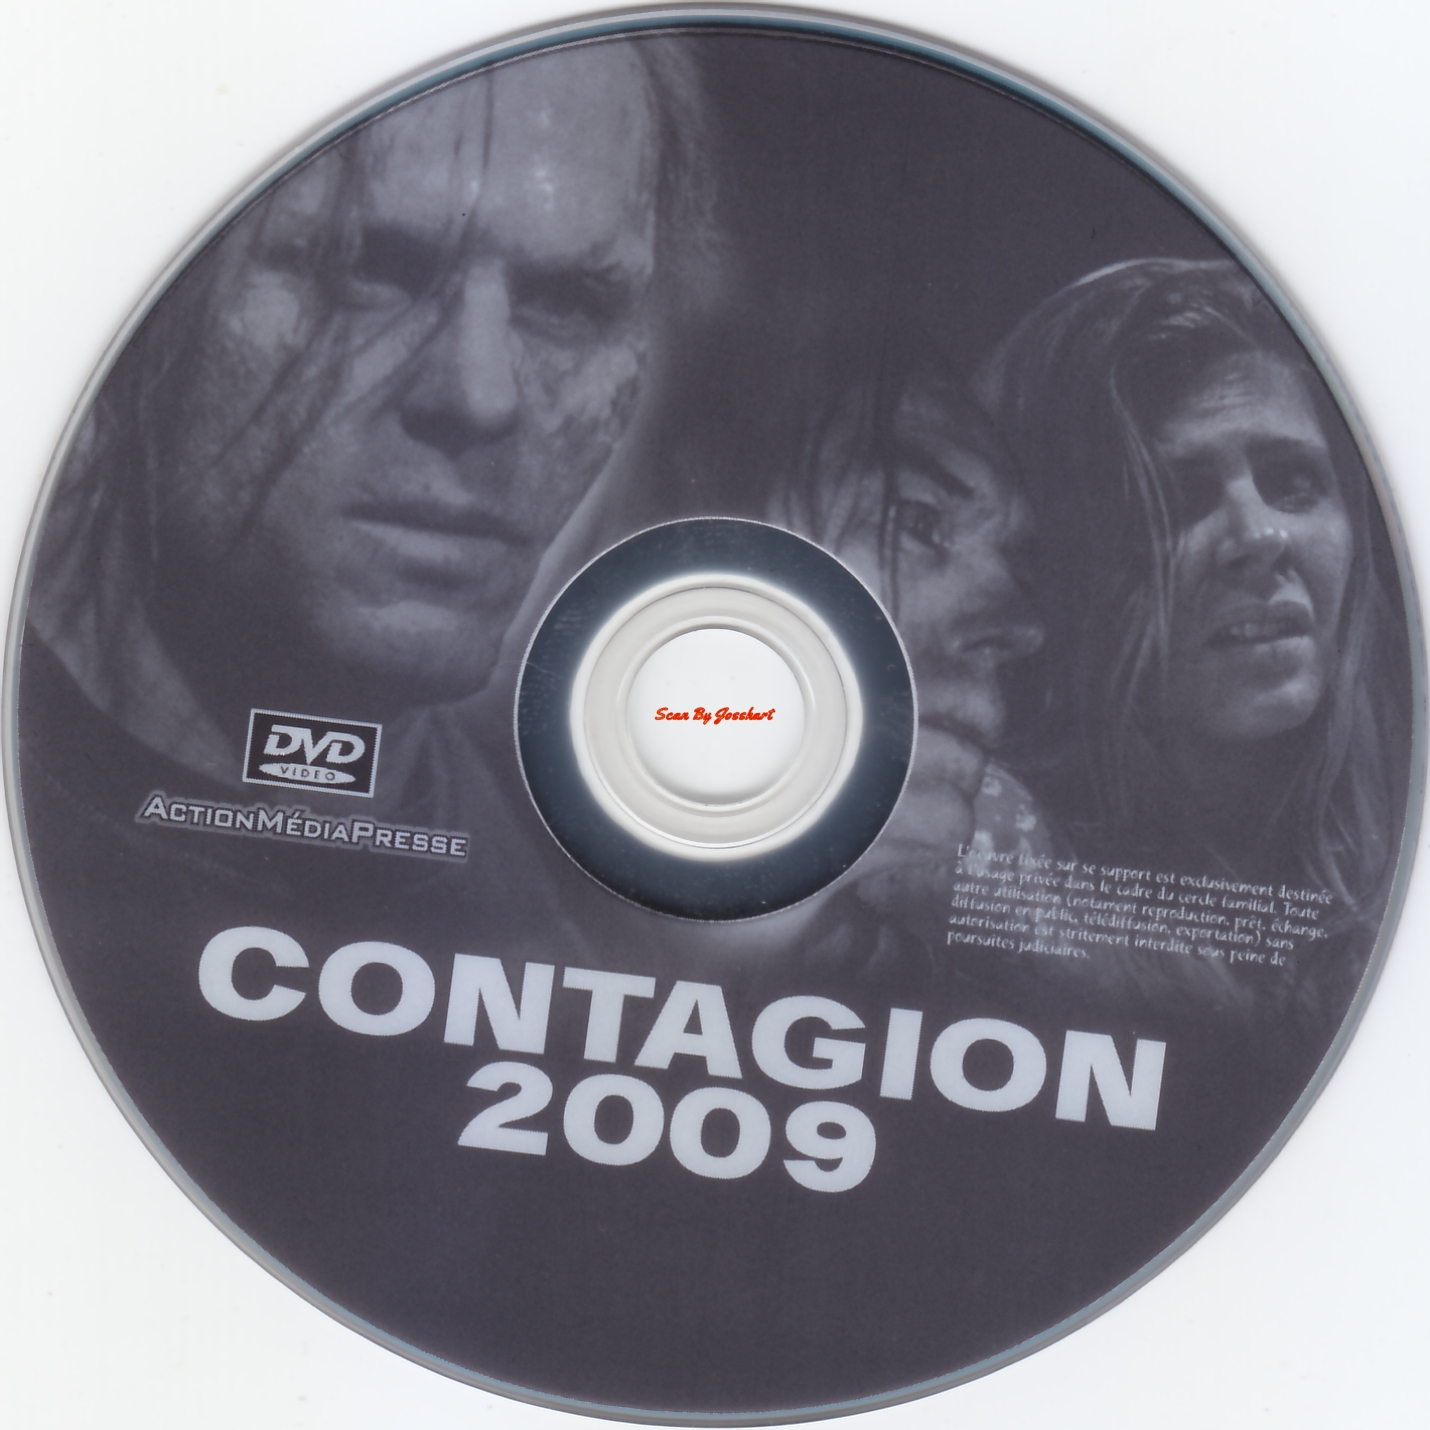 Contagion 2009 v2